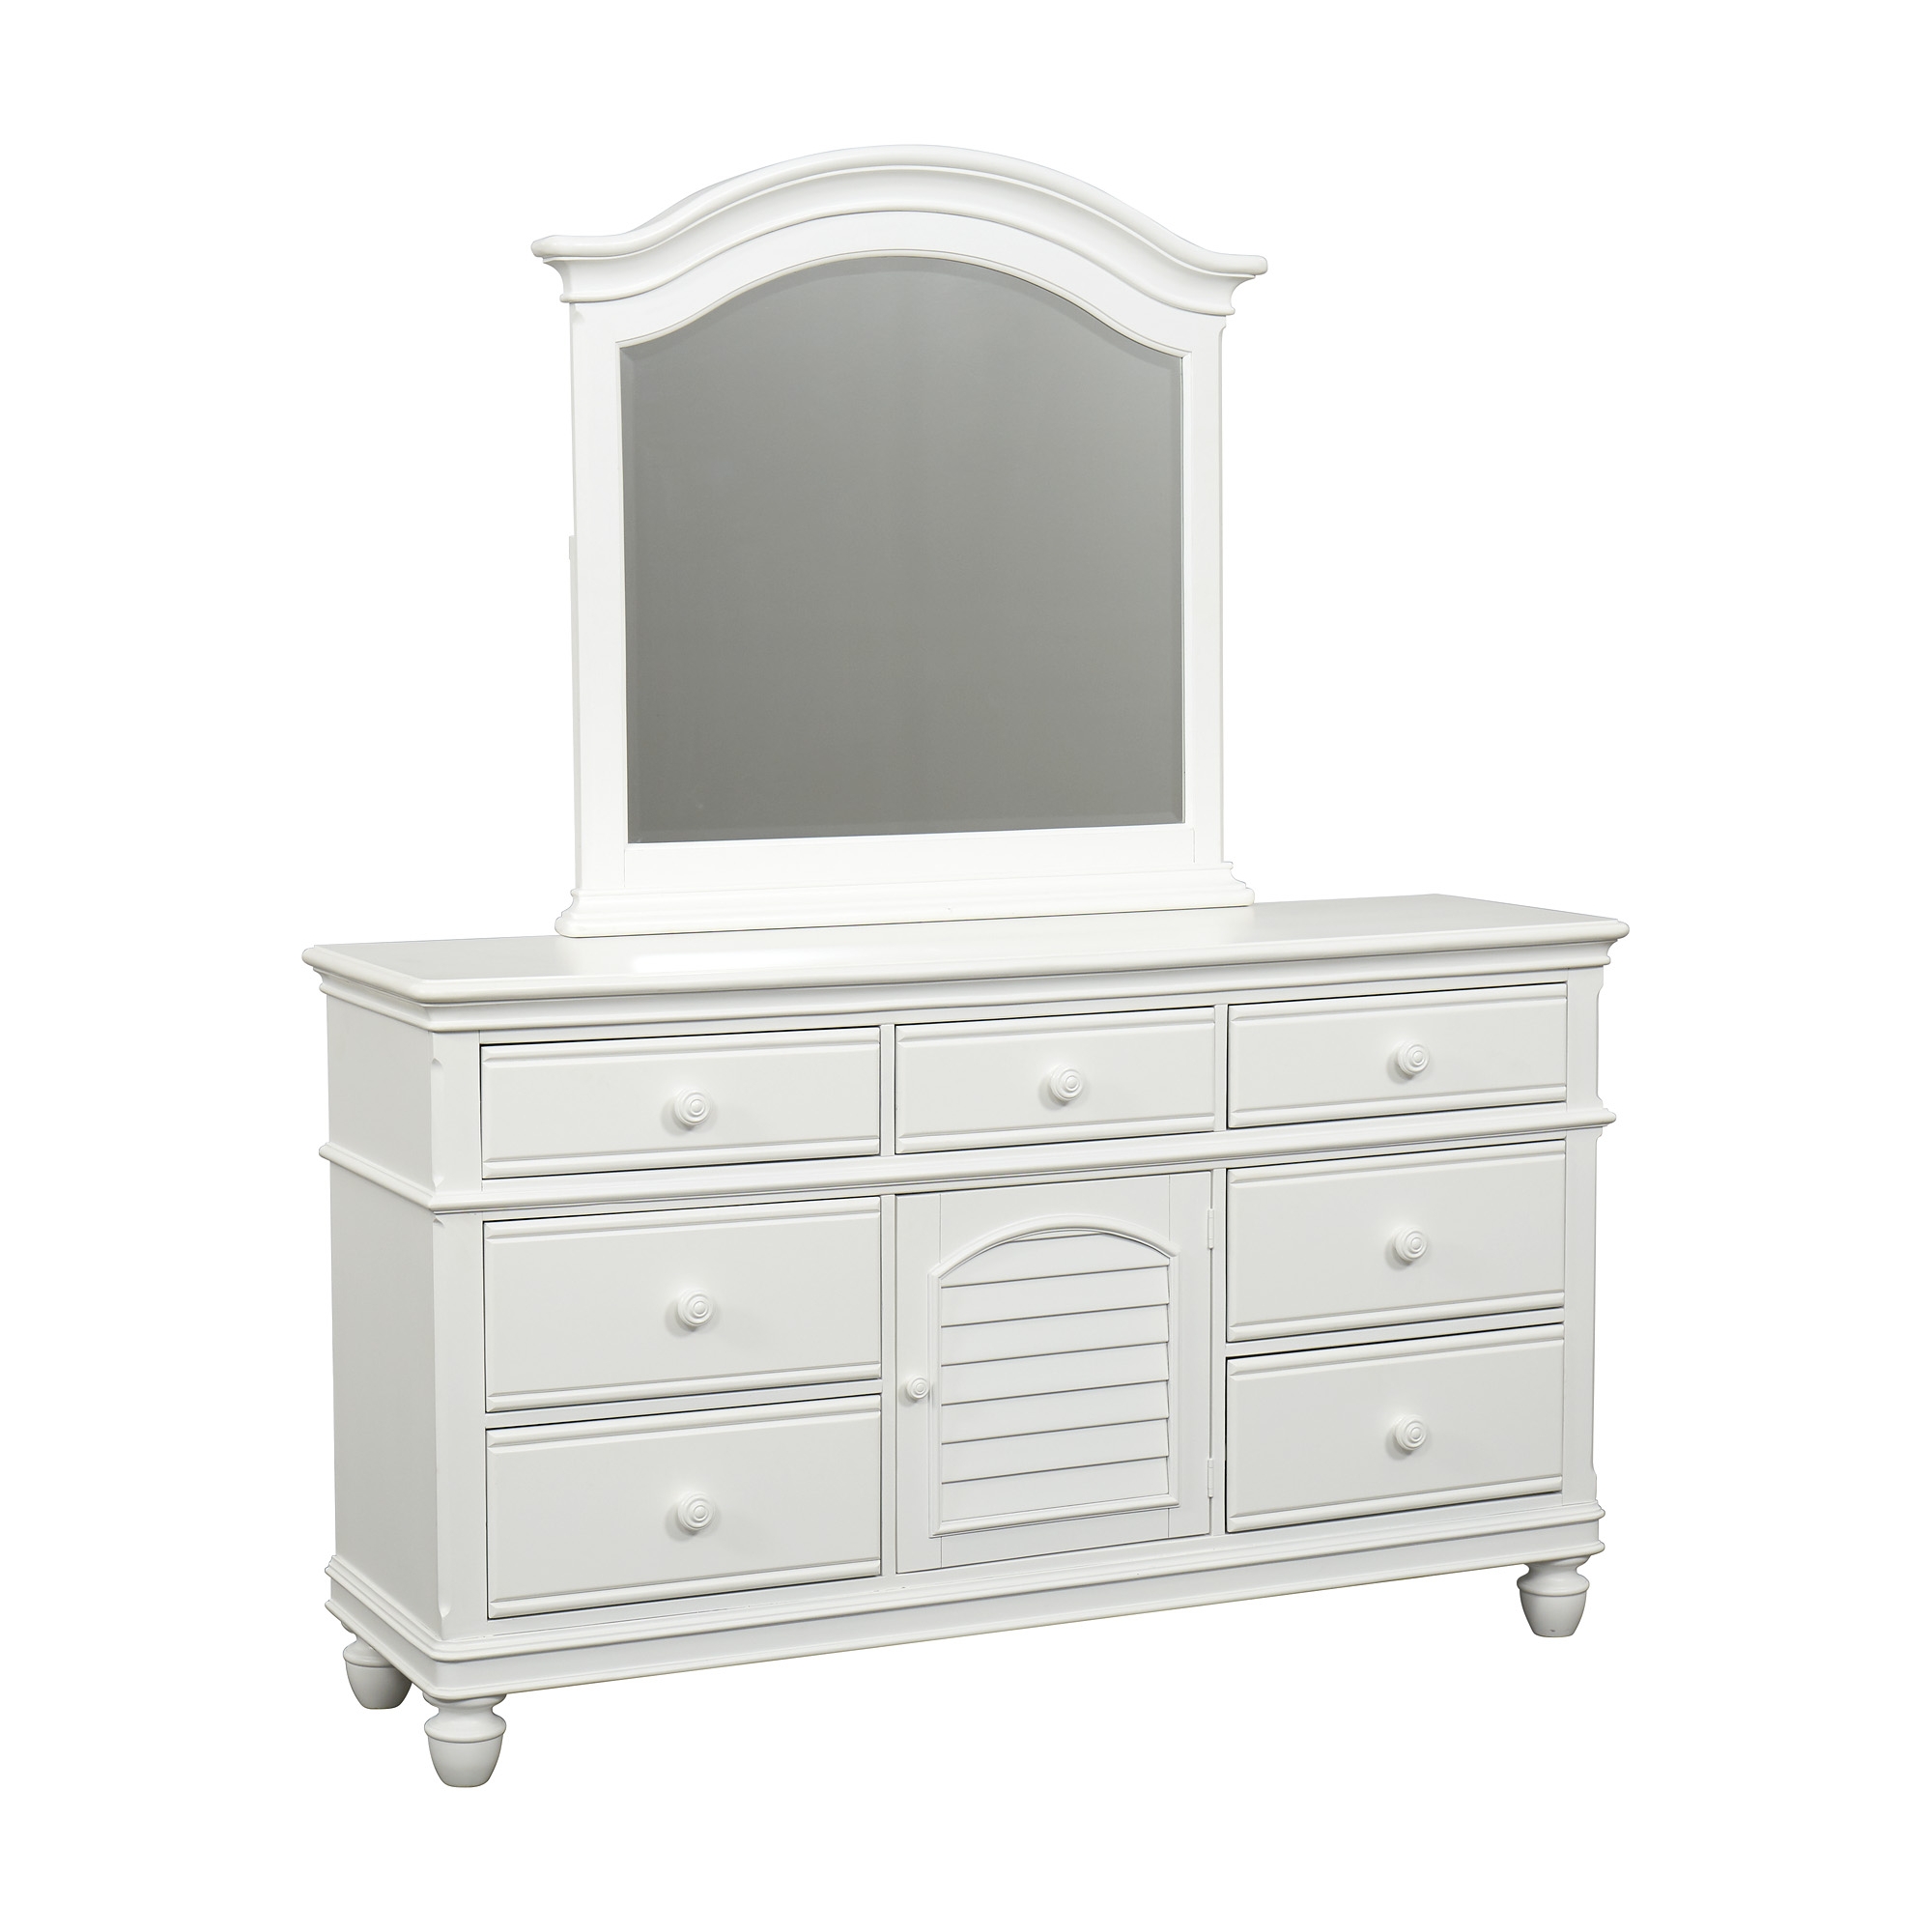 Coastal Retreat Dresser With Mirror, White Dresser With Vanity Mirror